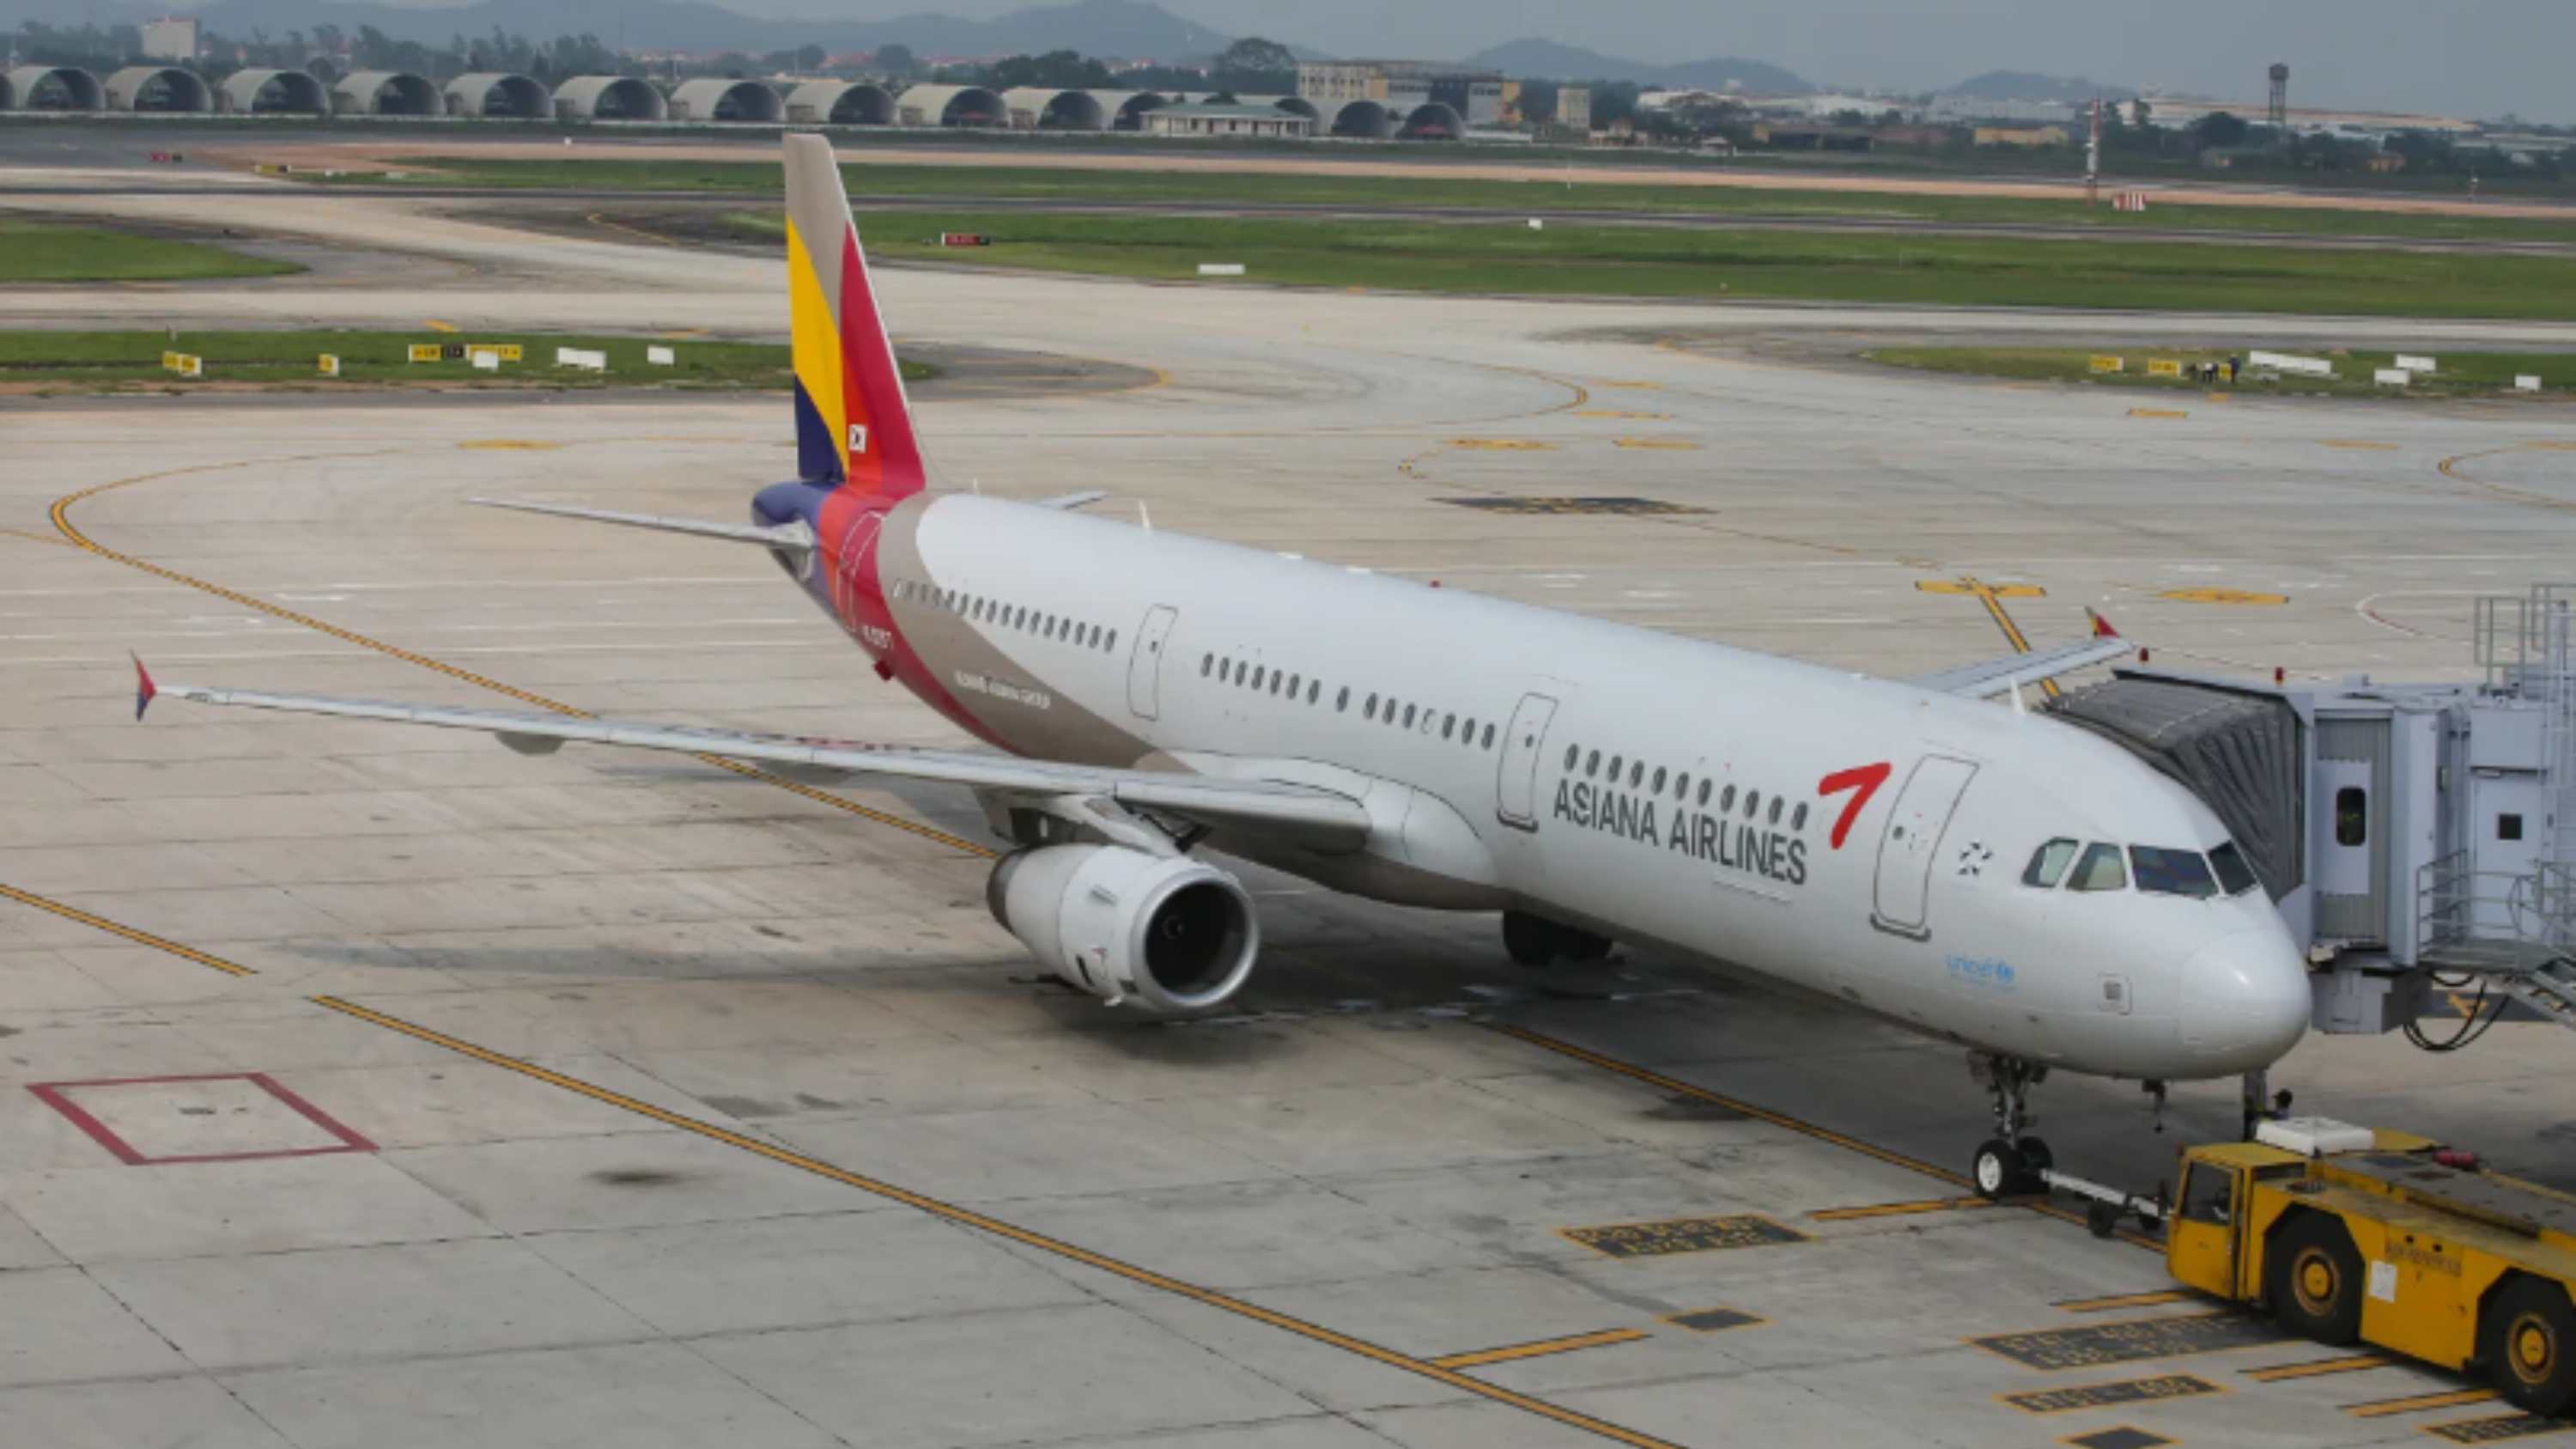 Drzwi samolotu Asiana Airlines zostały otwarte, gdy był w powietrzu